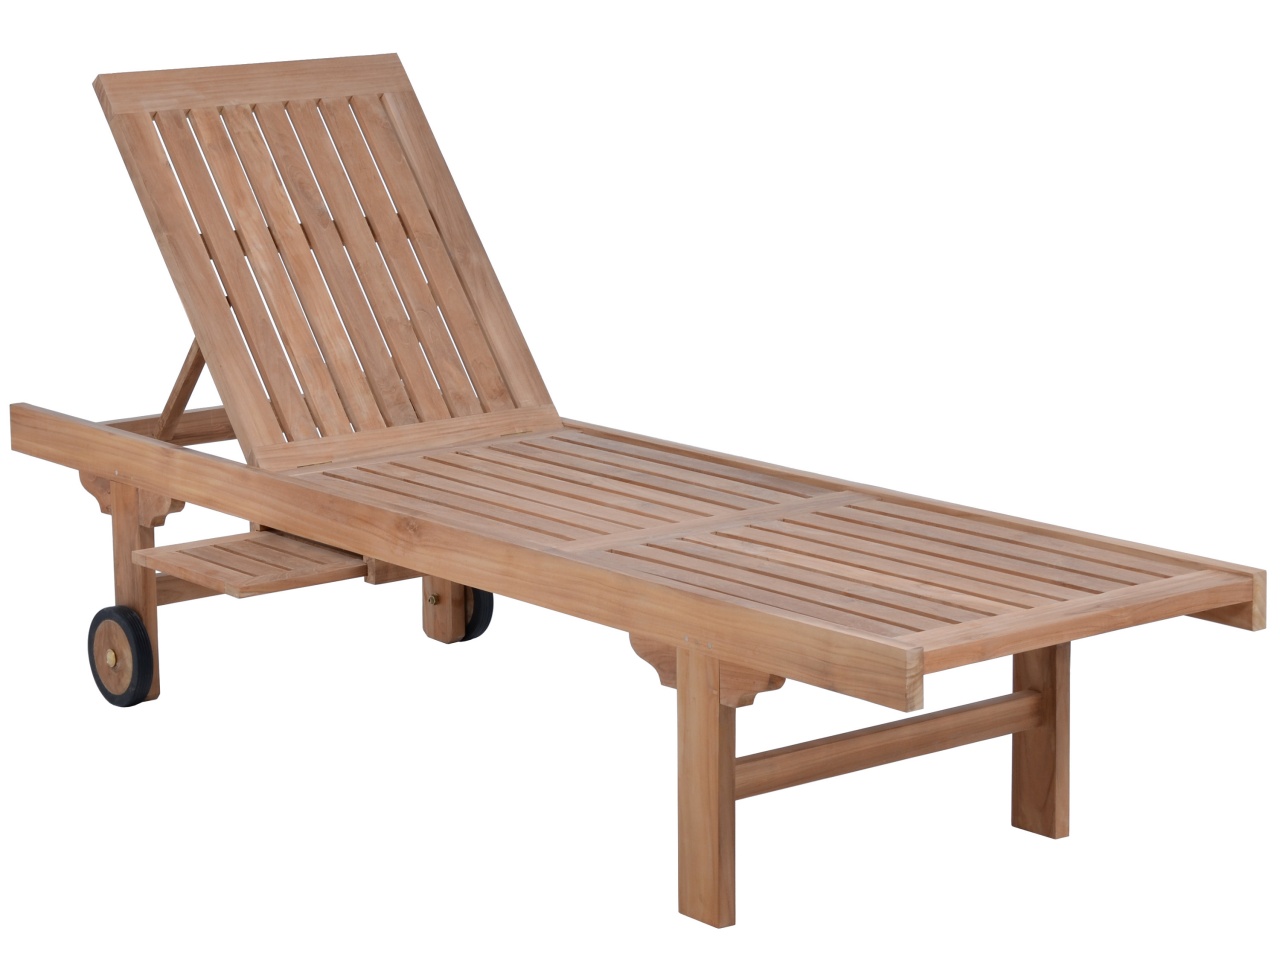 Gartentisch Teak Genial How to Protect Teak Outdoor Furniture – Outdoor Furniture